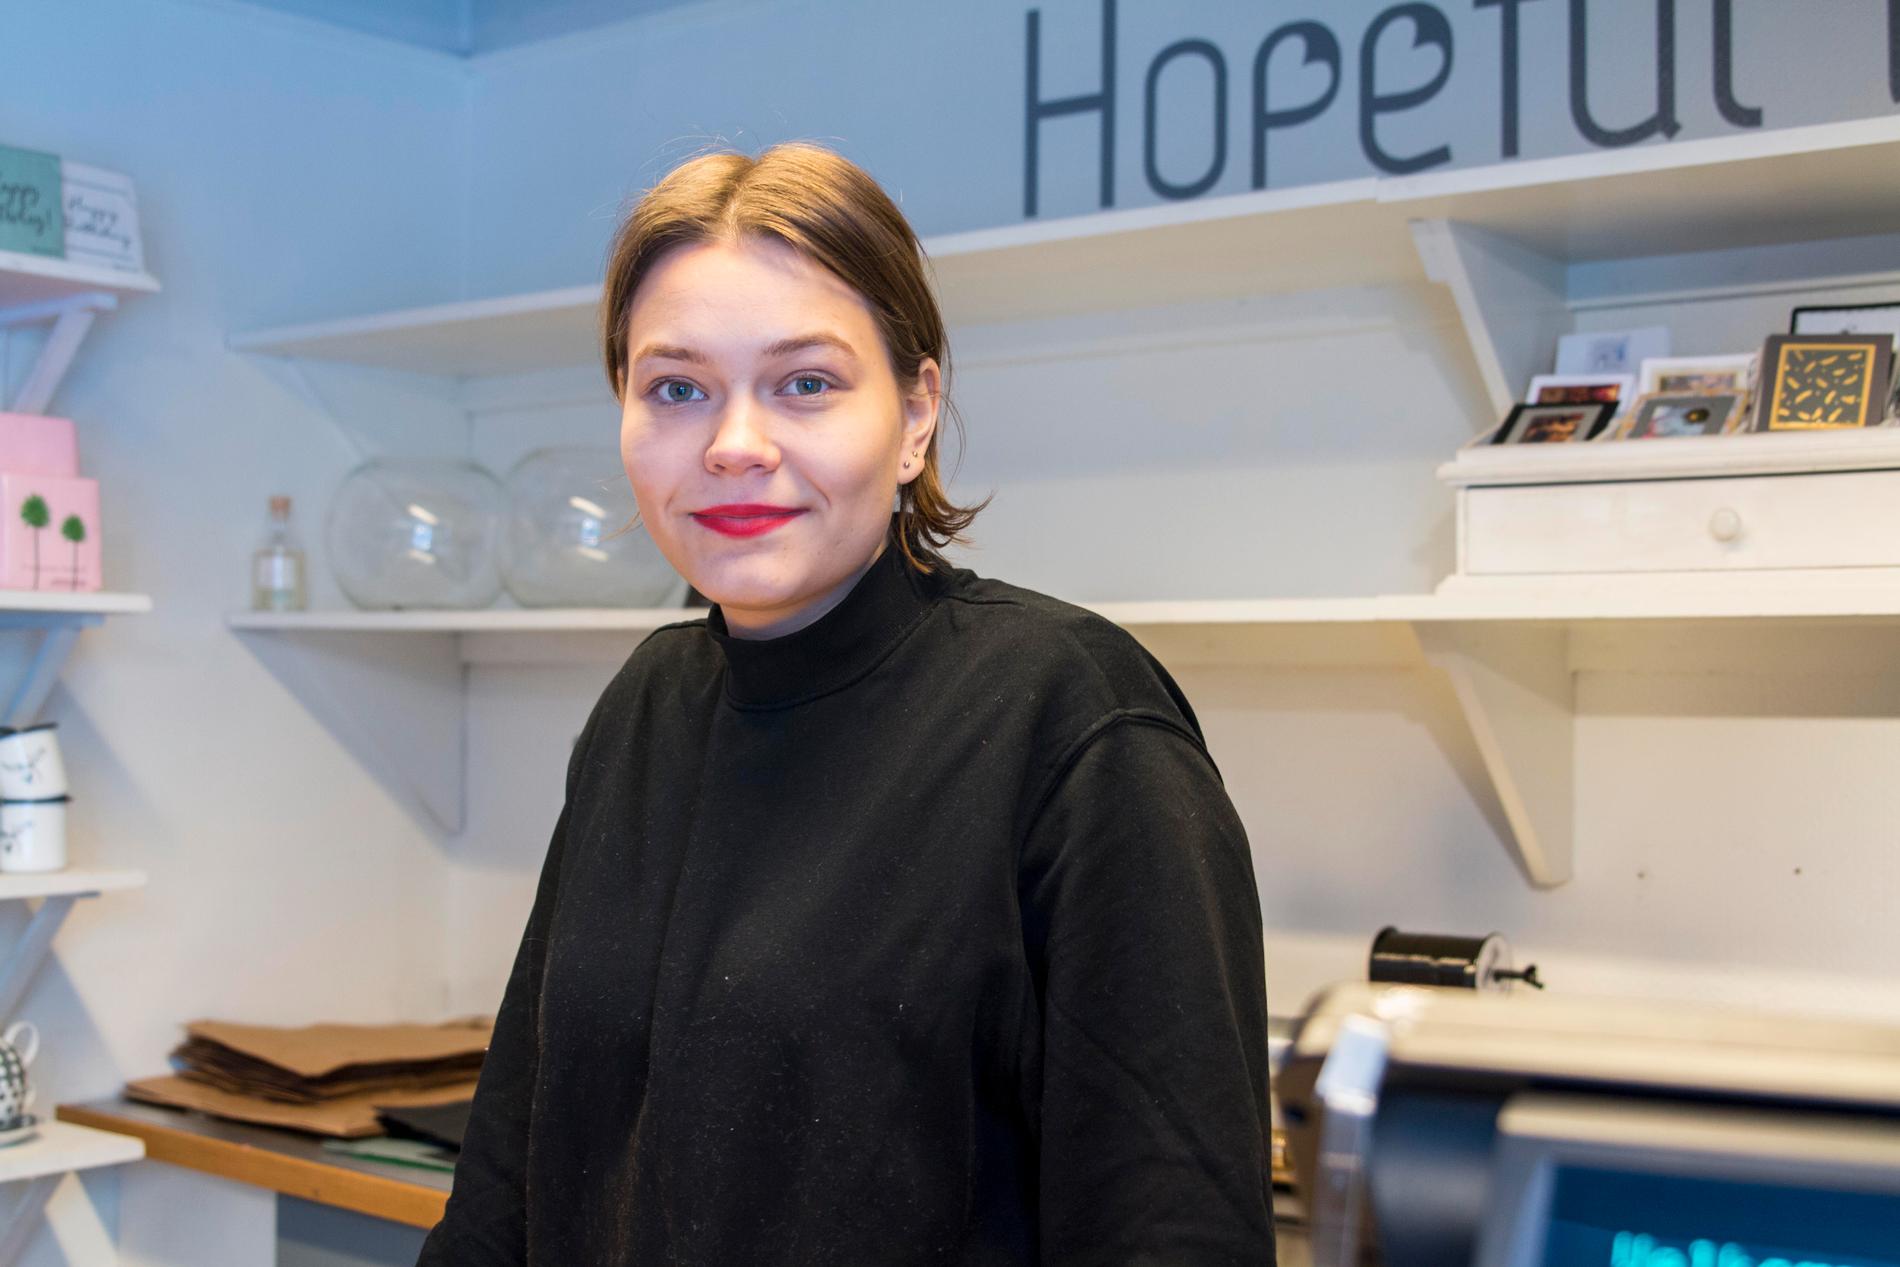 Etter å ha satt sykepleierstudiet på pause, har jobben hos Hopeful vært avgjørende for at hun vil fortsette med studiene, forteller Marie Justnes (23).